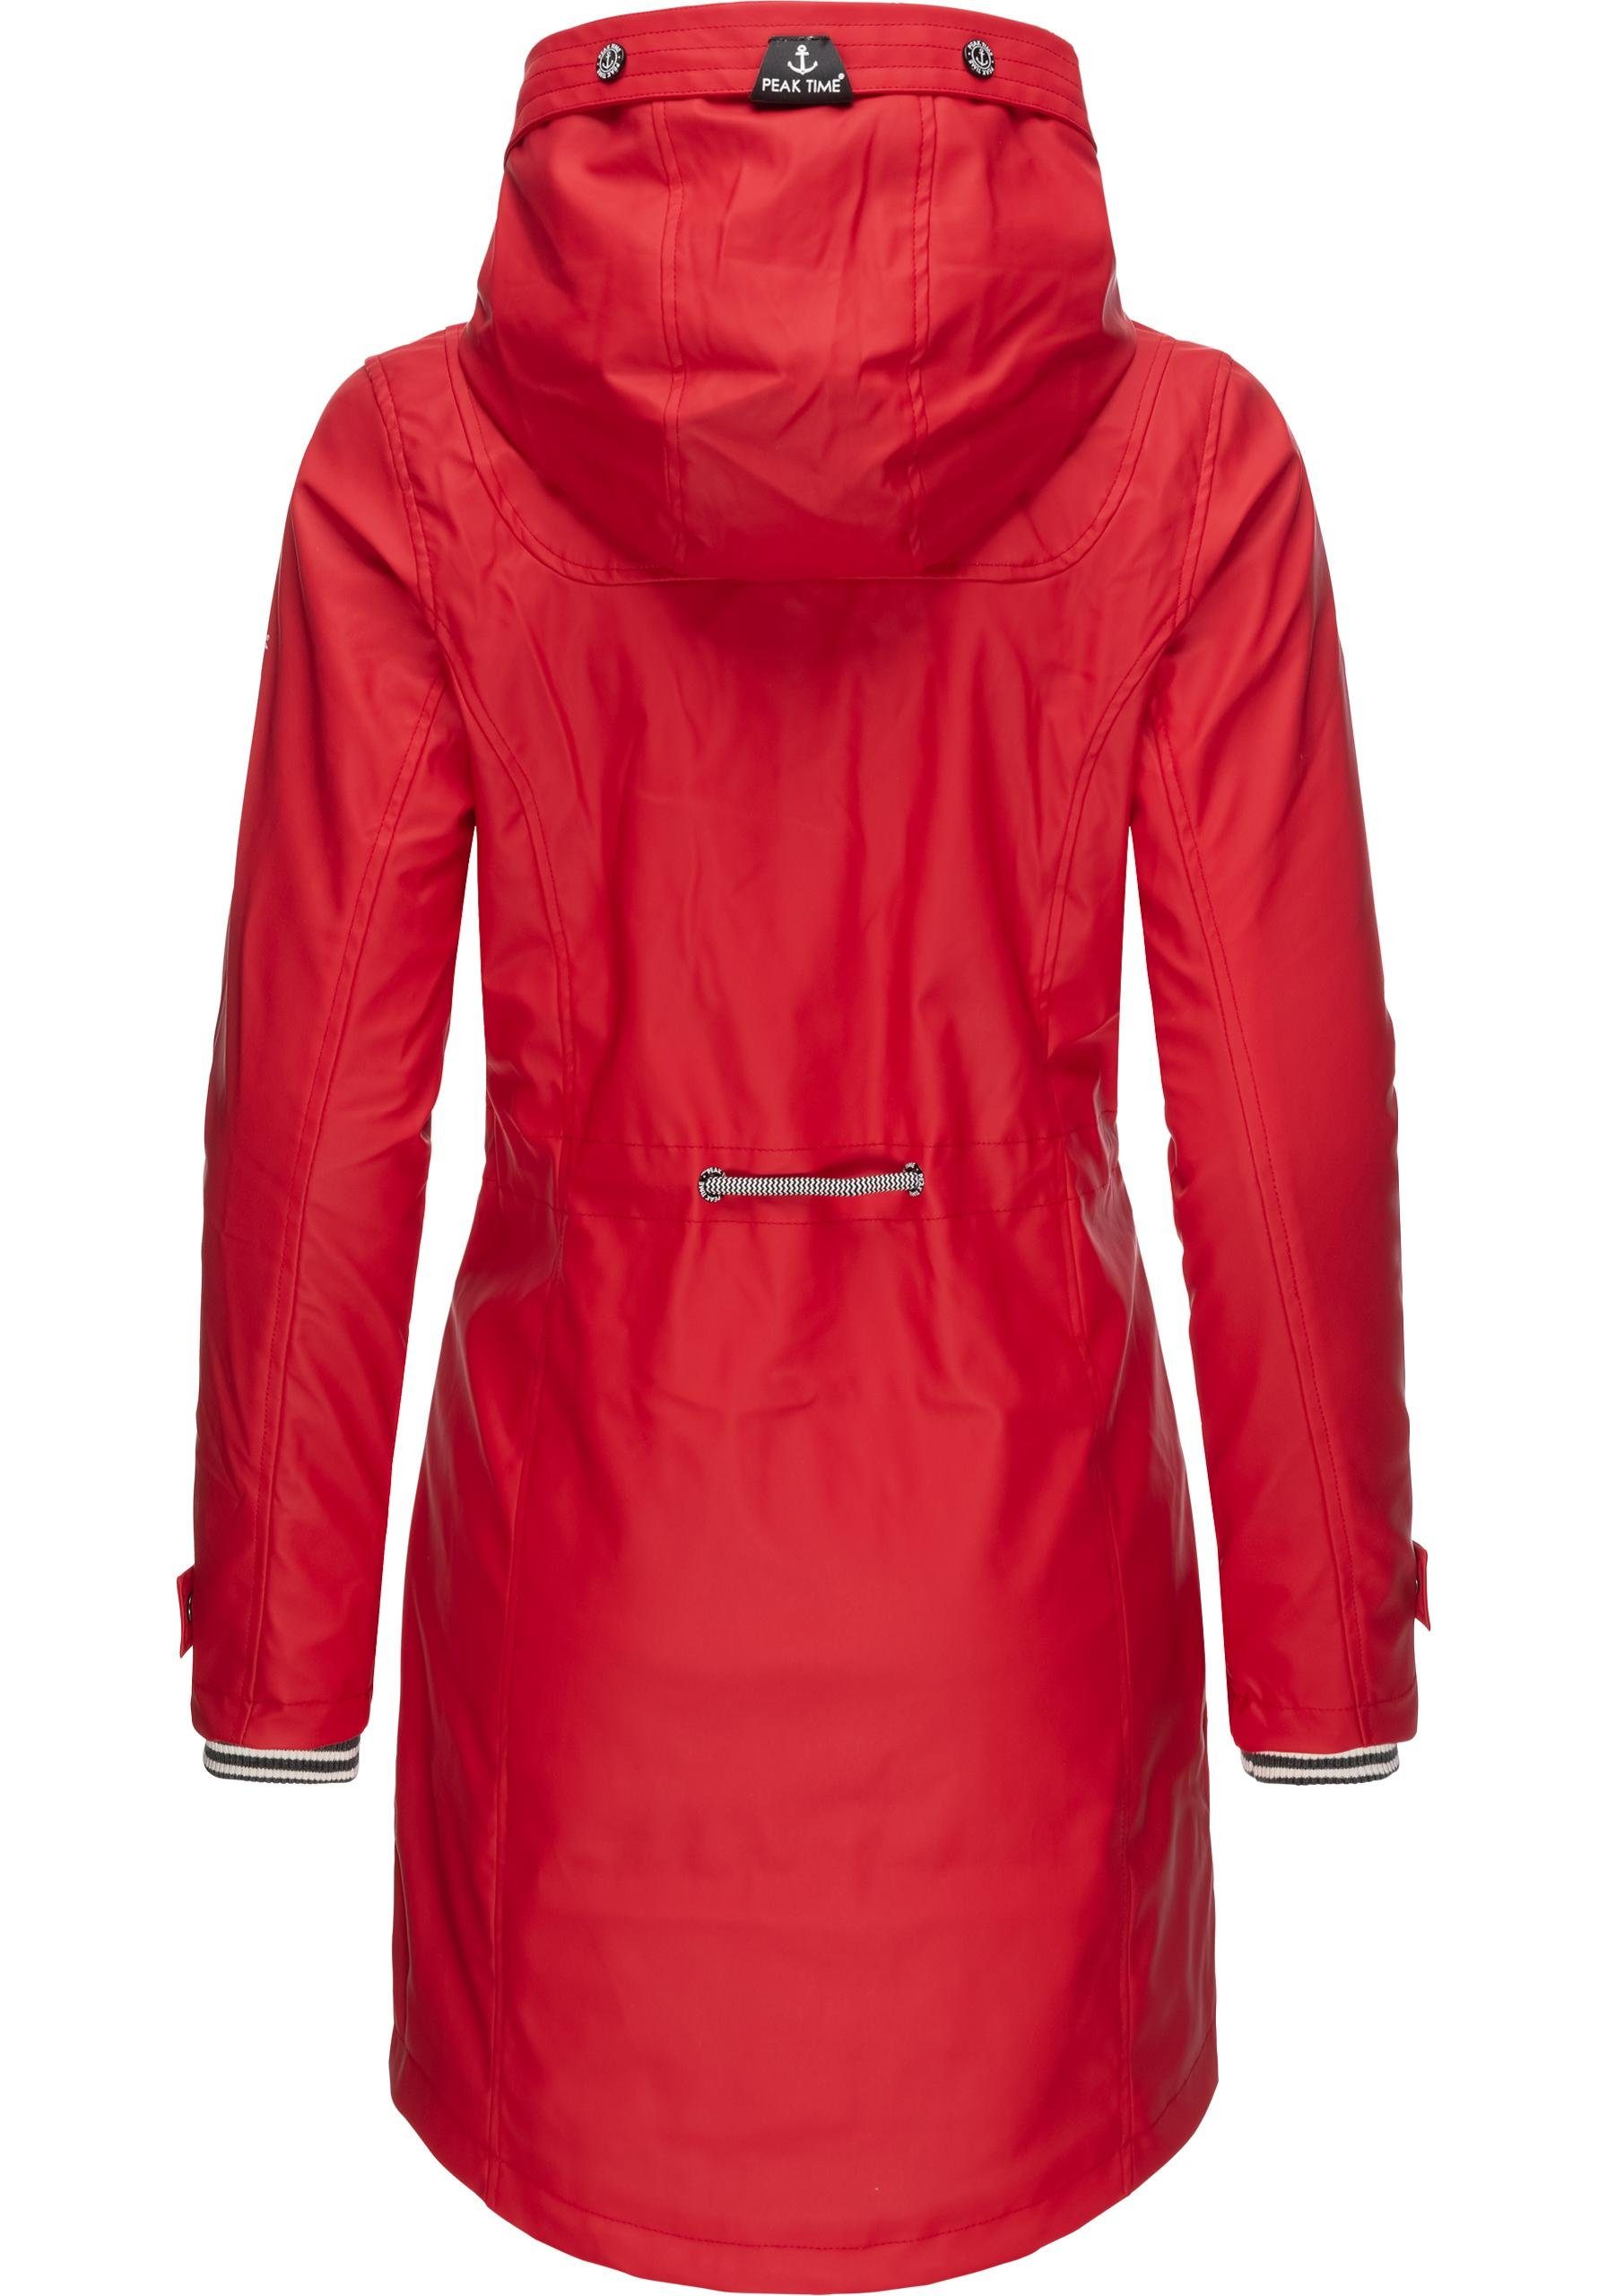 PEAK TIME Regenjacke L60042 stylisch taillierter Regenmantel für Damen